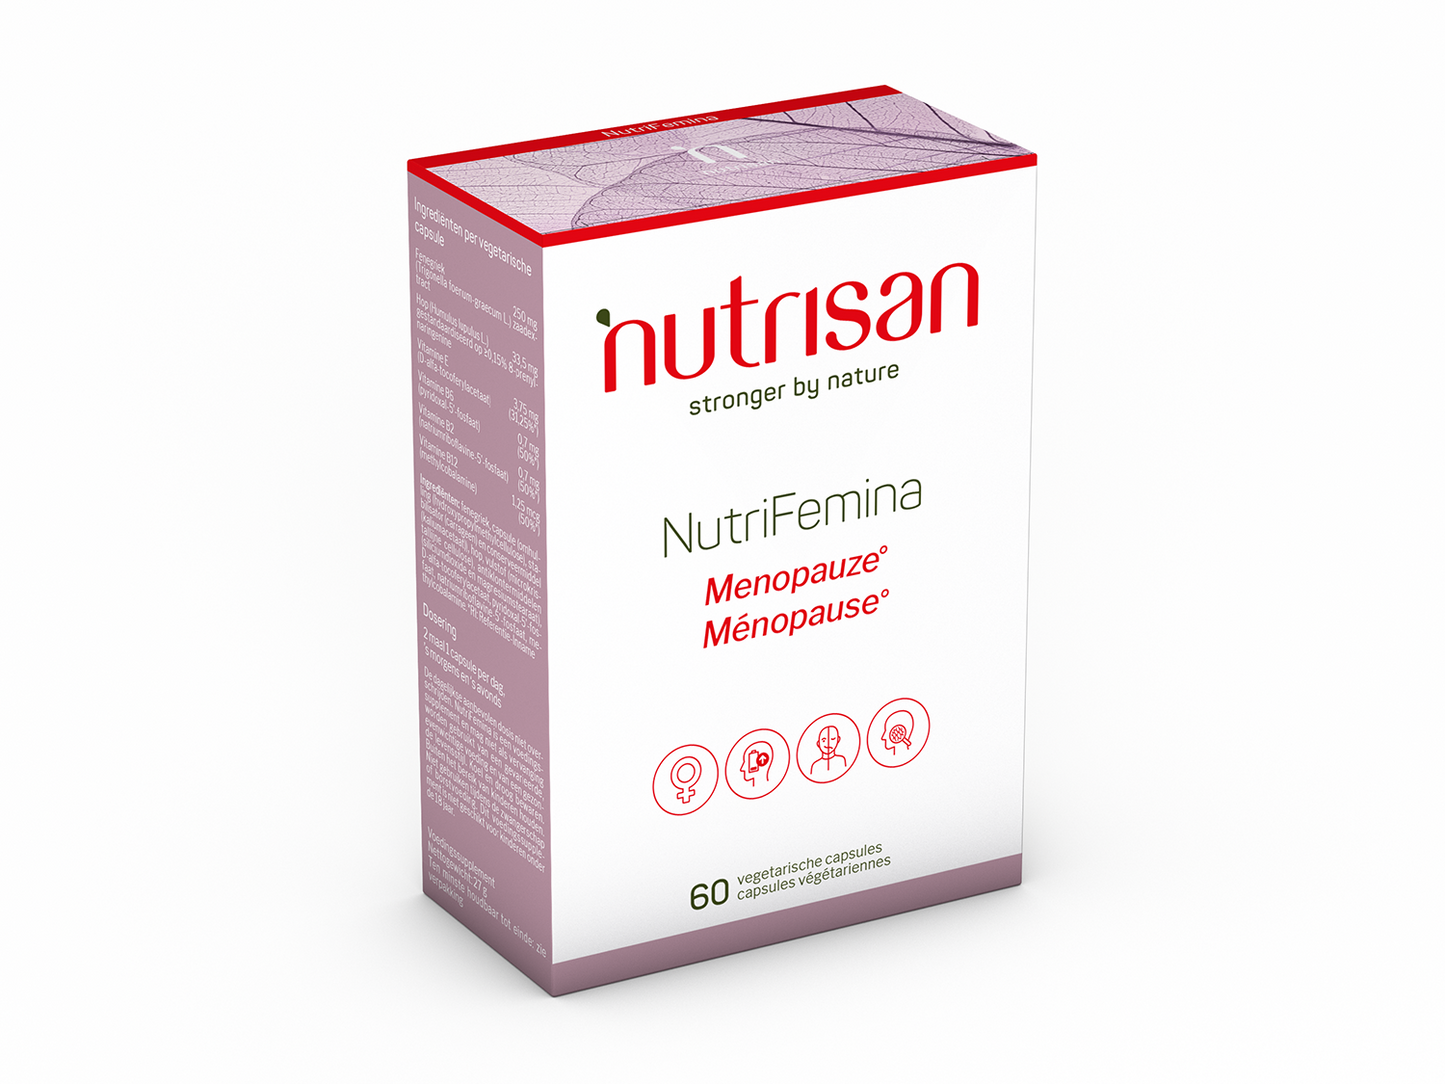 Nutrisan NutriFemina - 60 capsules - Supplement voor de menopauze